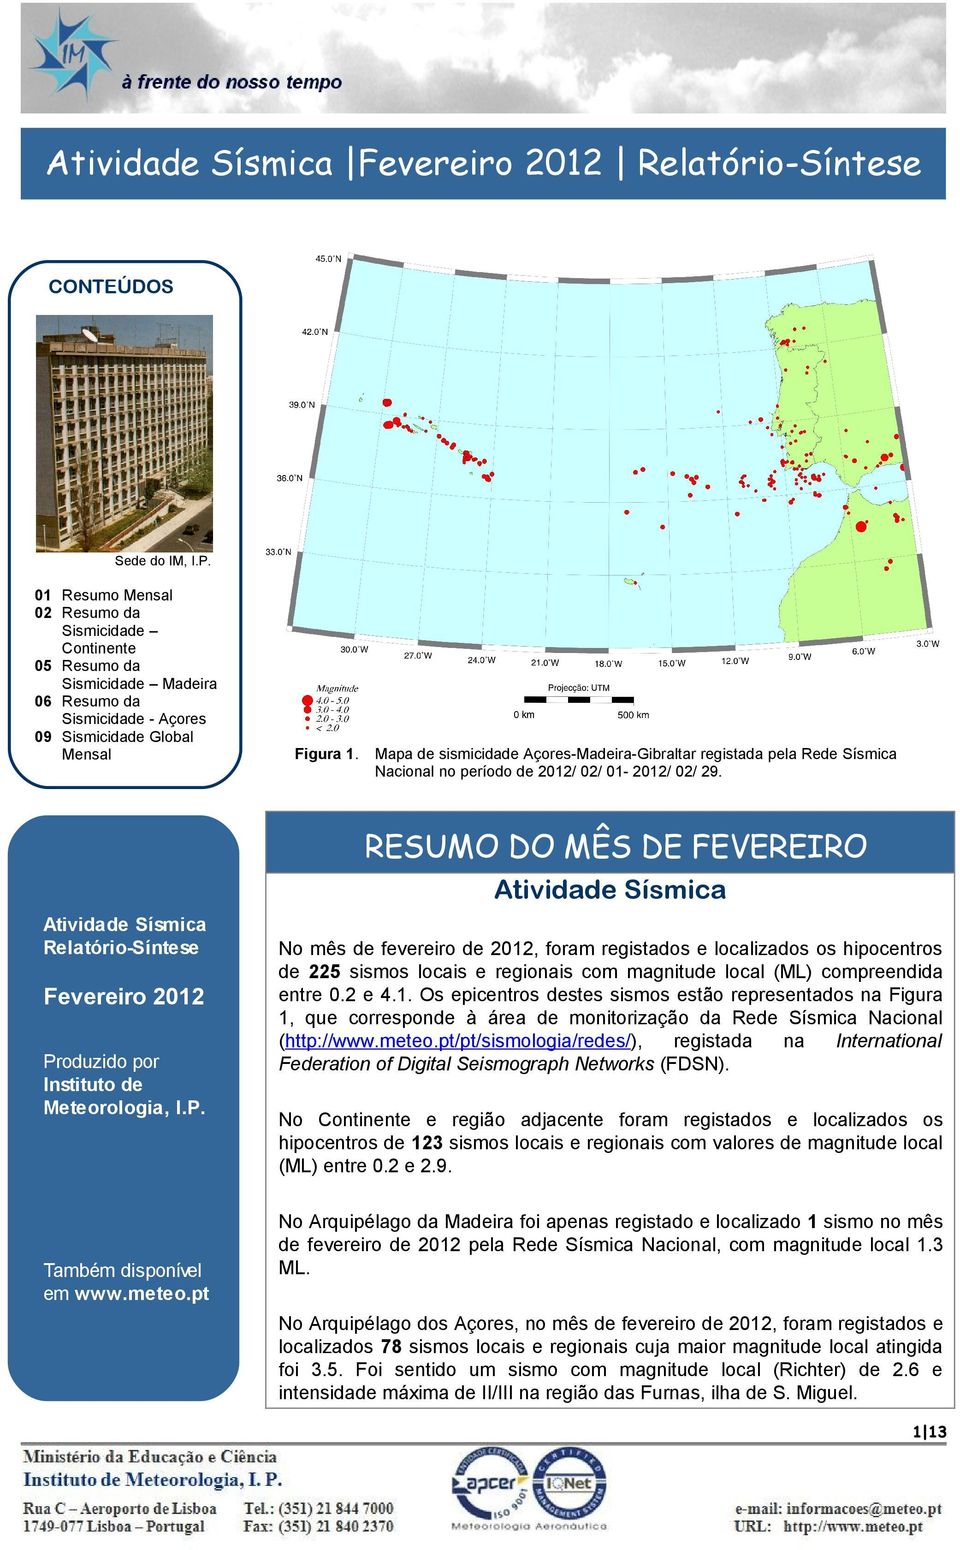 Mapa de sismicidade Açores-Madeira-Gibraltar registada pela Rede Sísmica Nacional no período de 212/ 2/ 1-212/ 2/ 29.